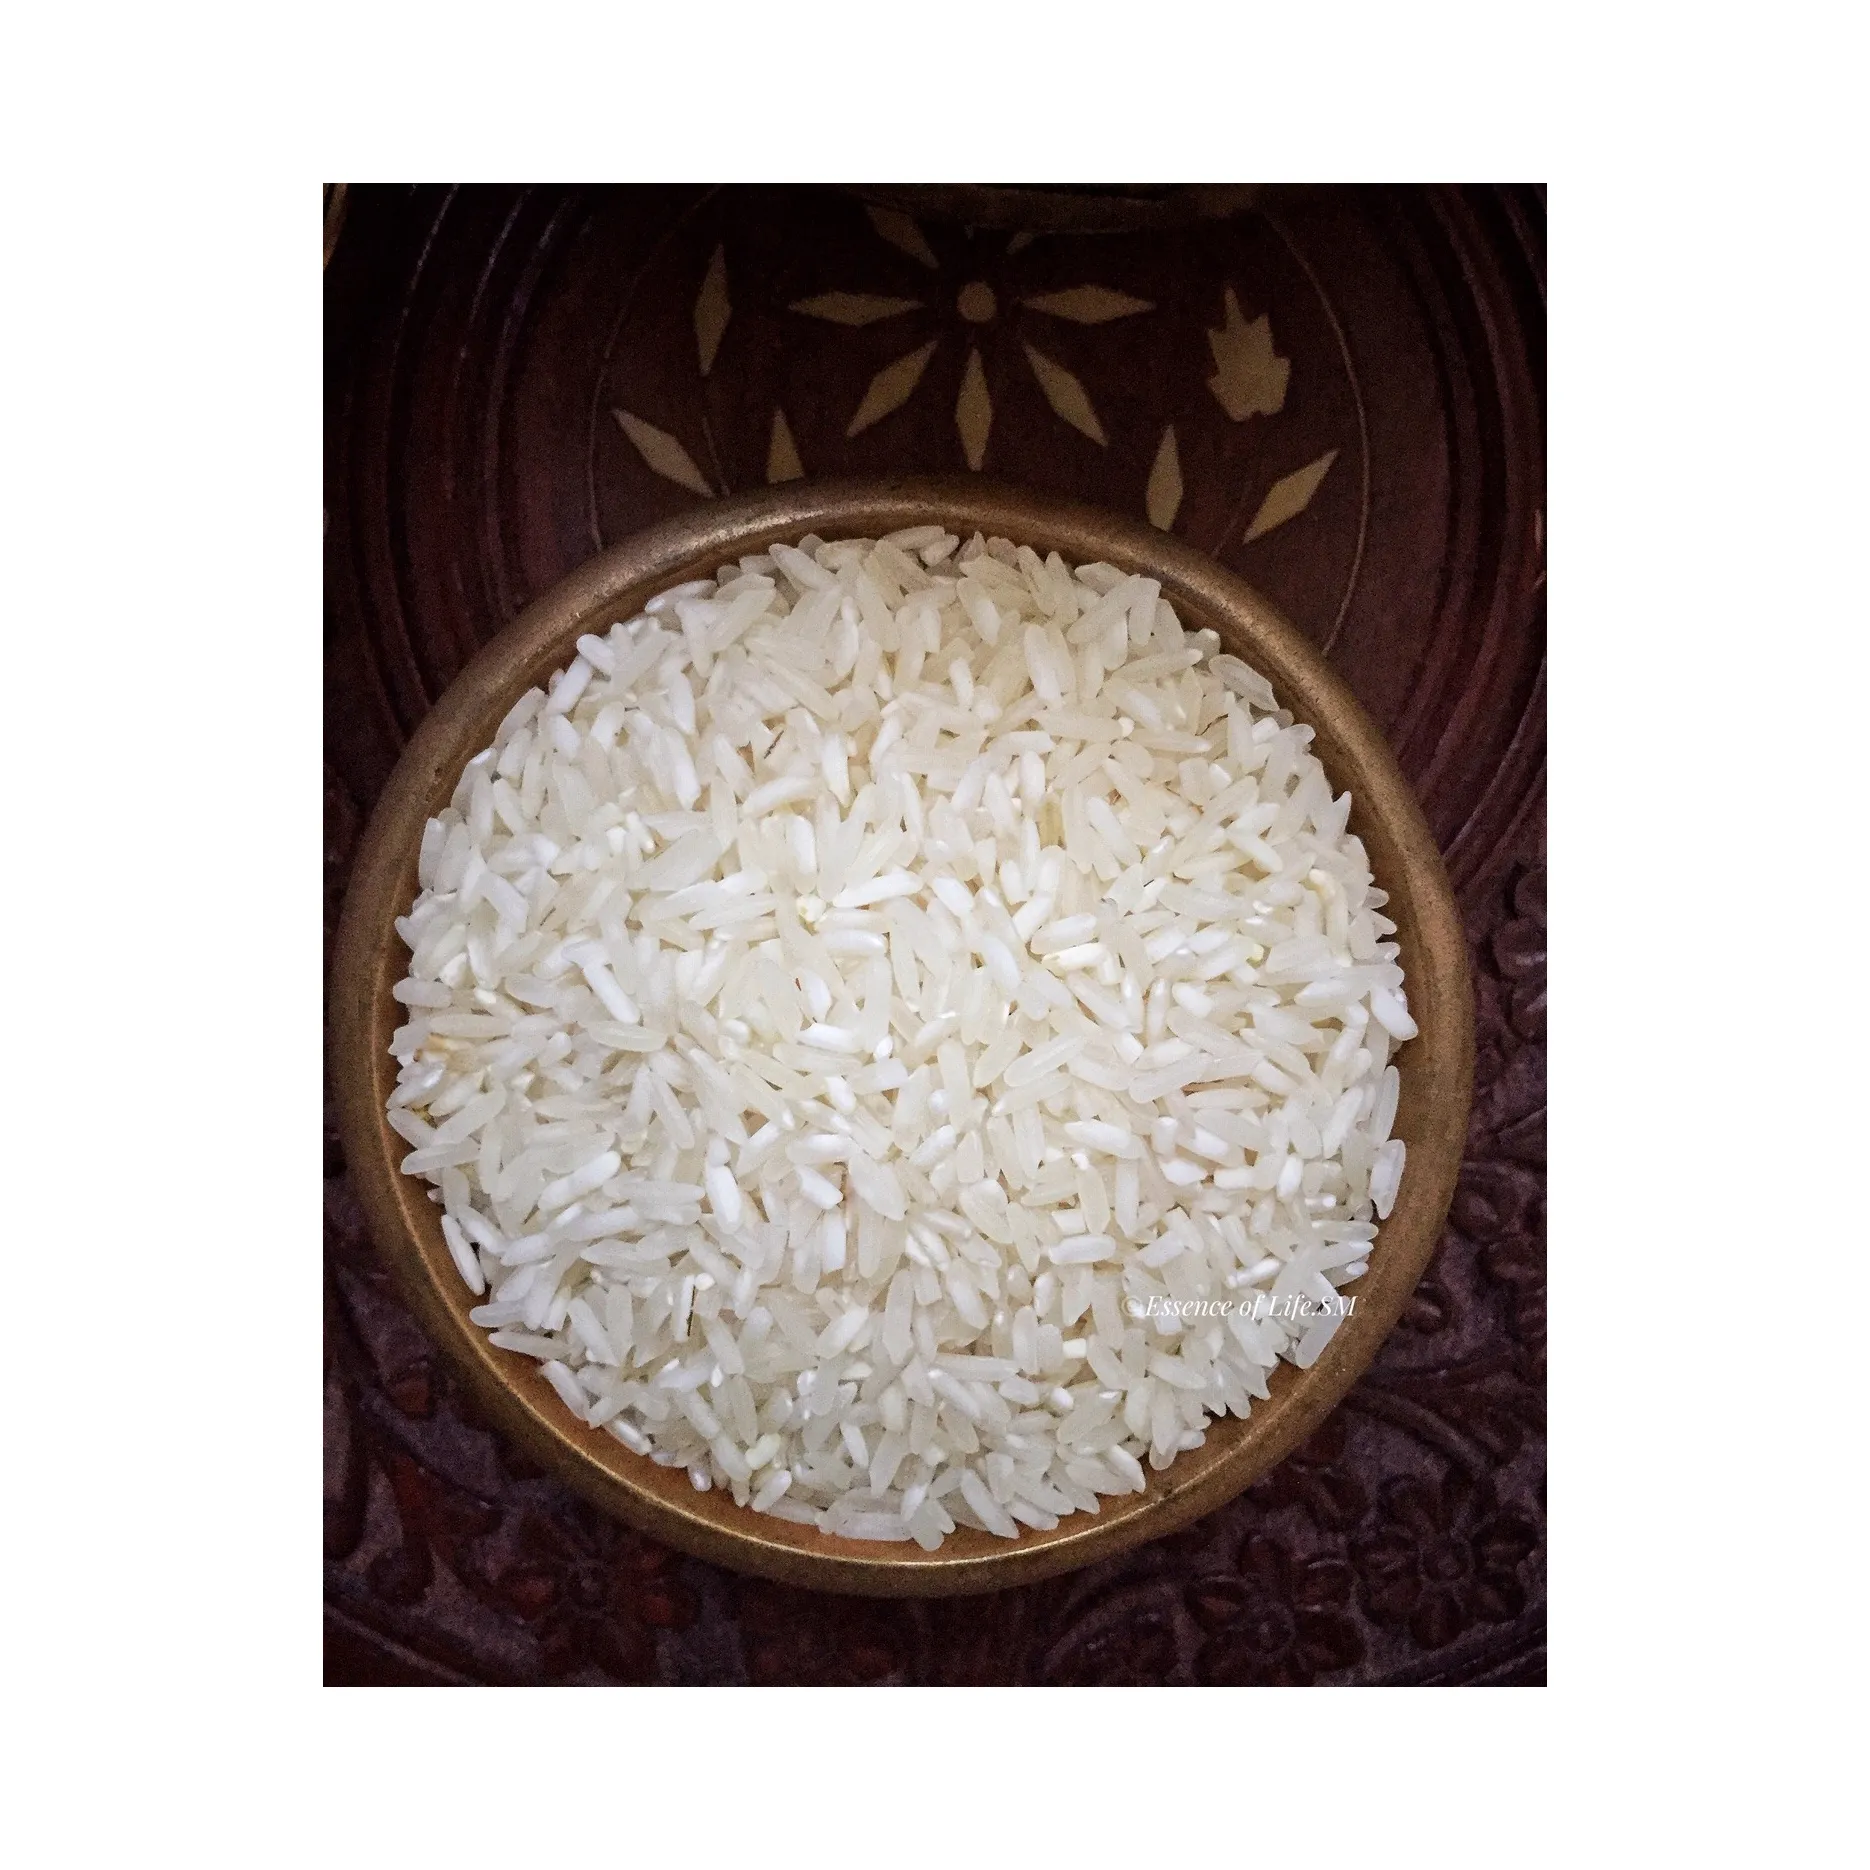 Pemasok kualitas terbaik Mahmood Rice tersedia untuk ekspor. Grosir beras putih gandum panjang VIETNAM